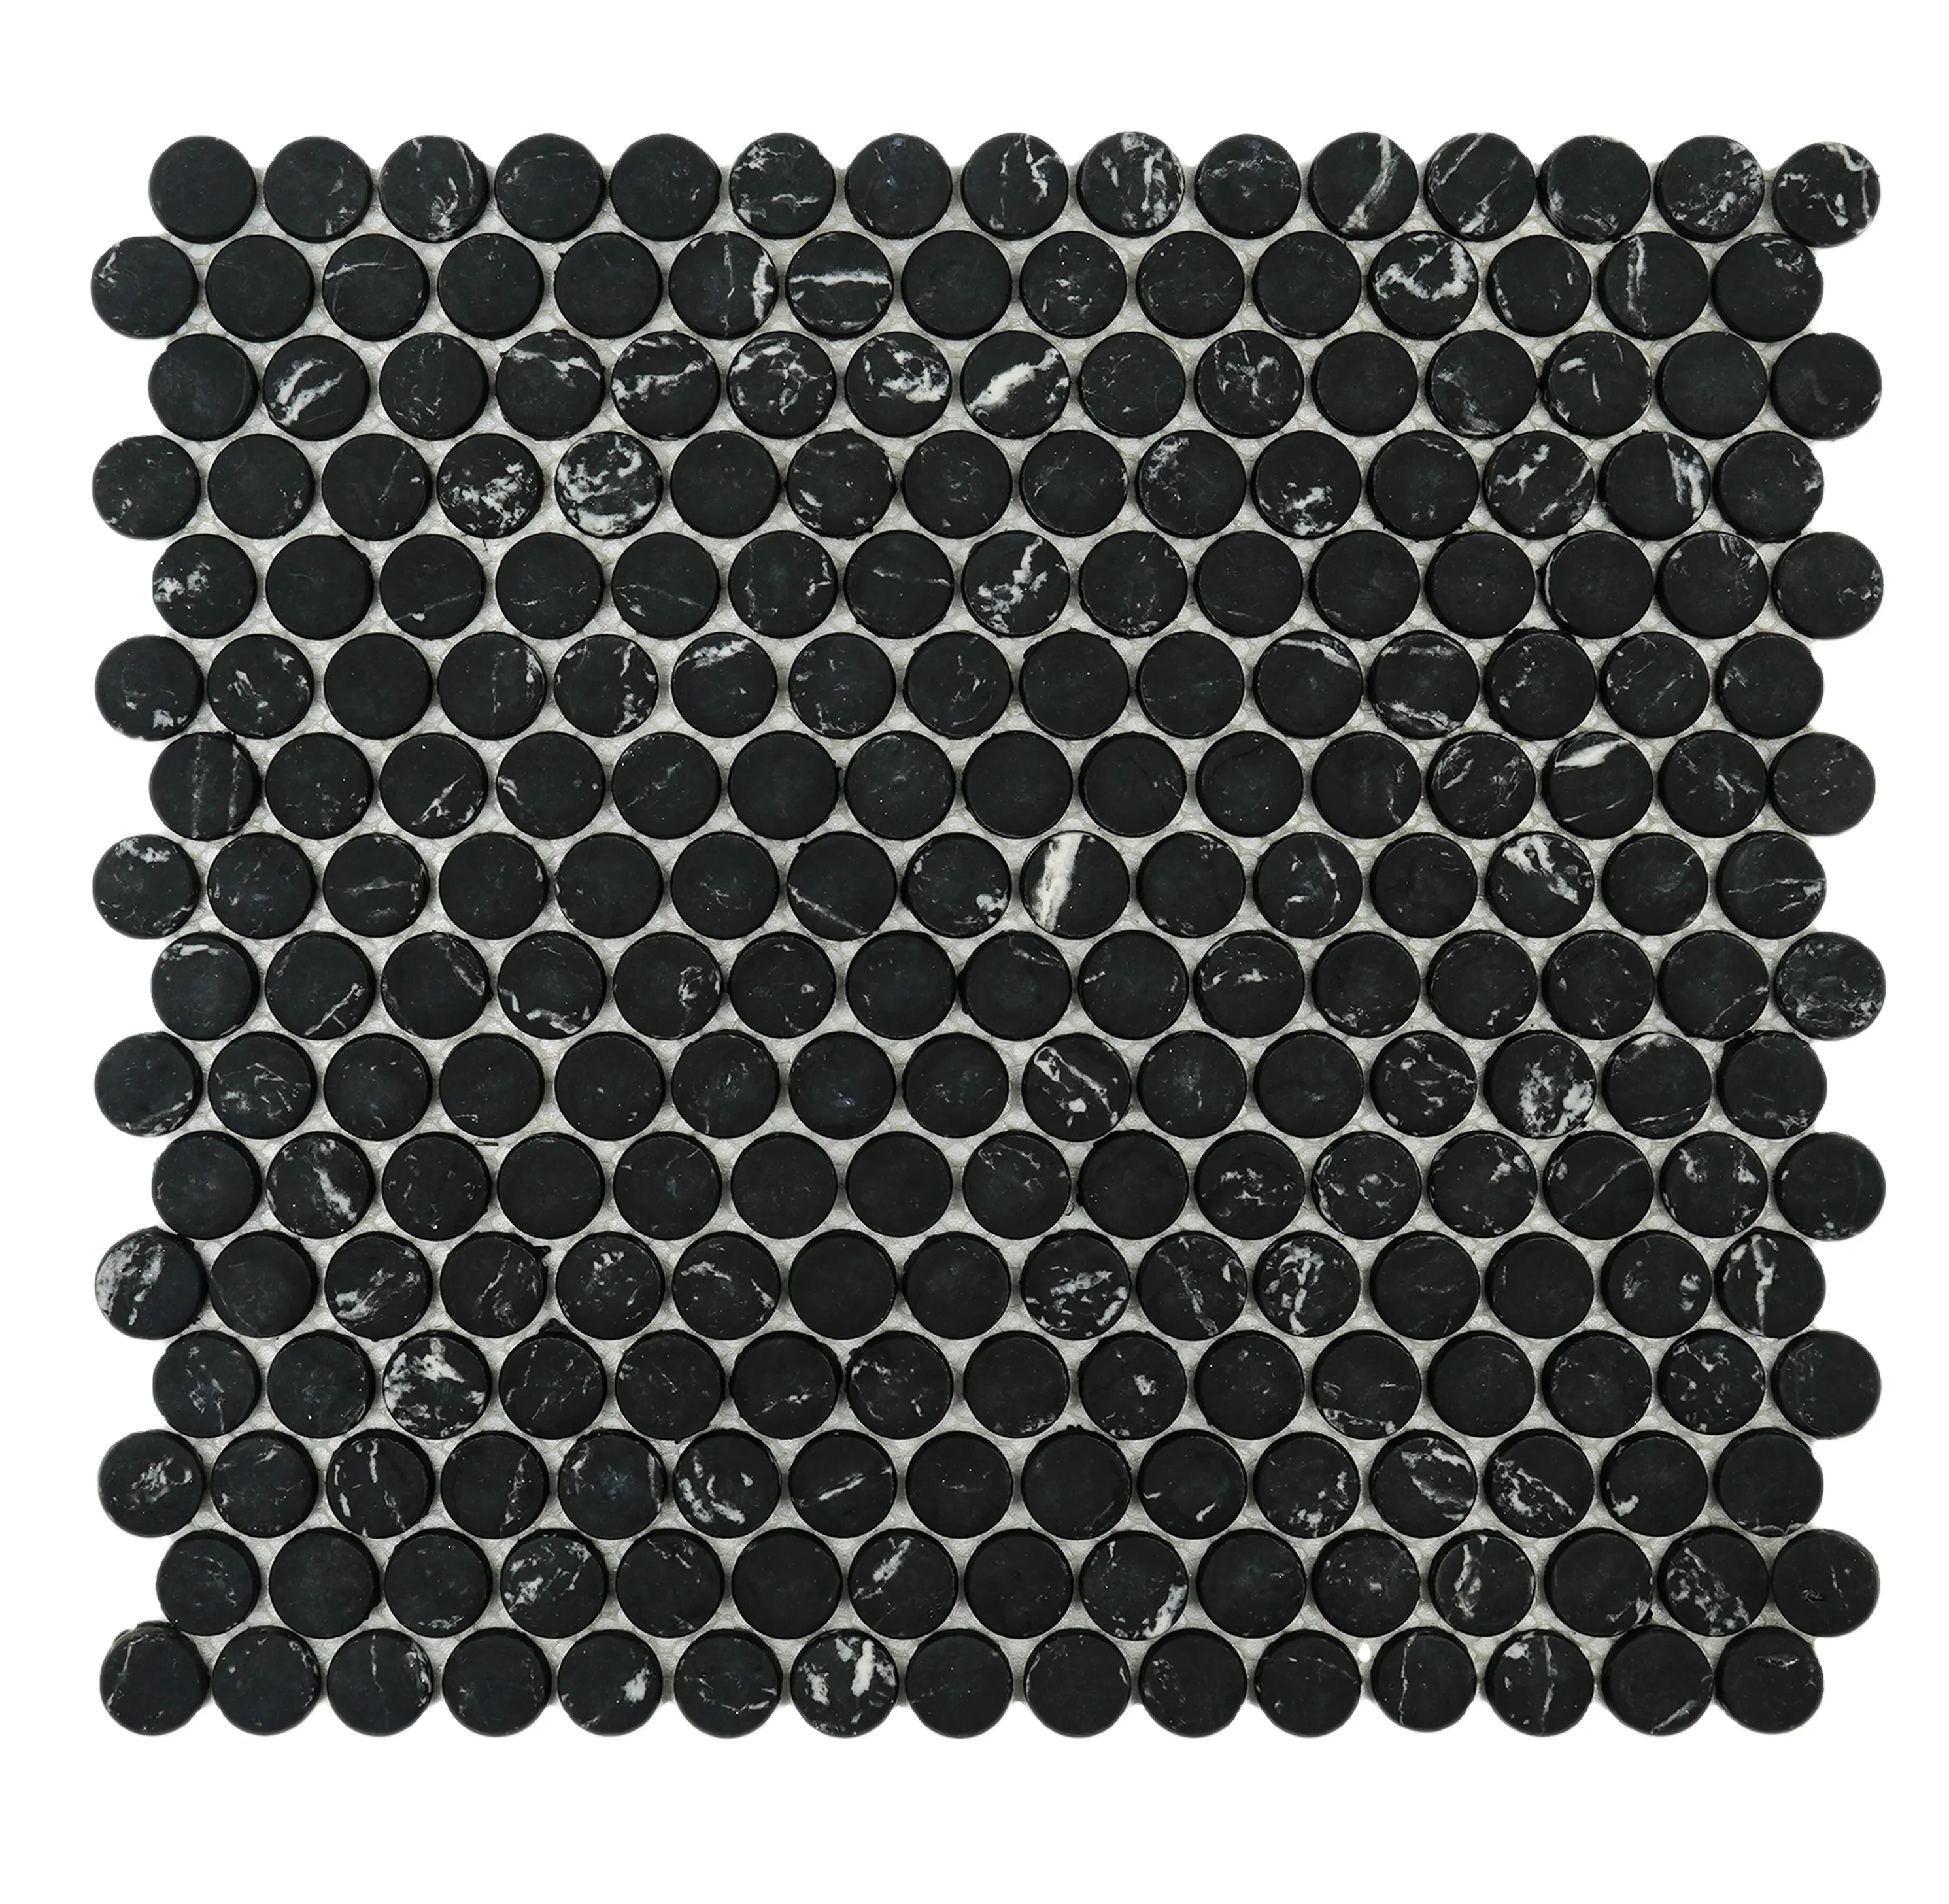 Nero Rotondo Bianco Riciclato Mattonelle di Mosaico di Vetro per il Bagno Cucina Backsplash e tutti i mattonelle della parete